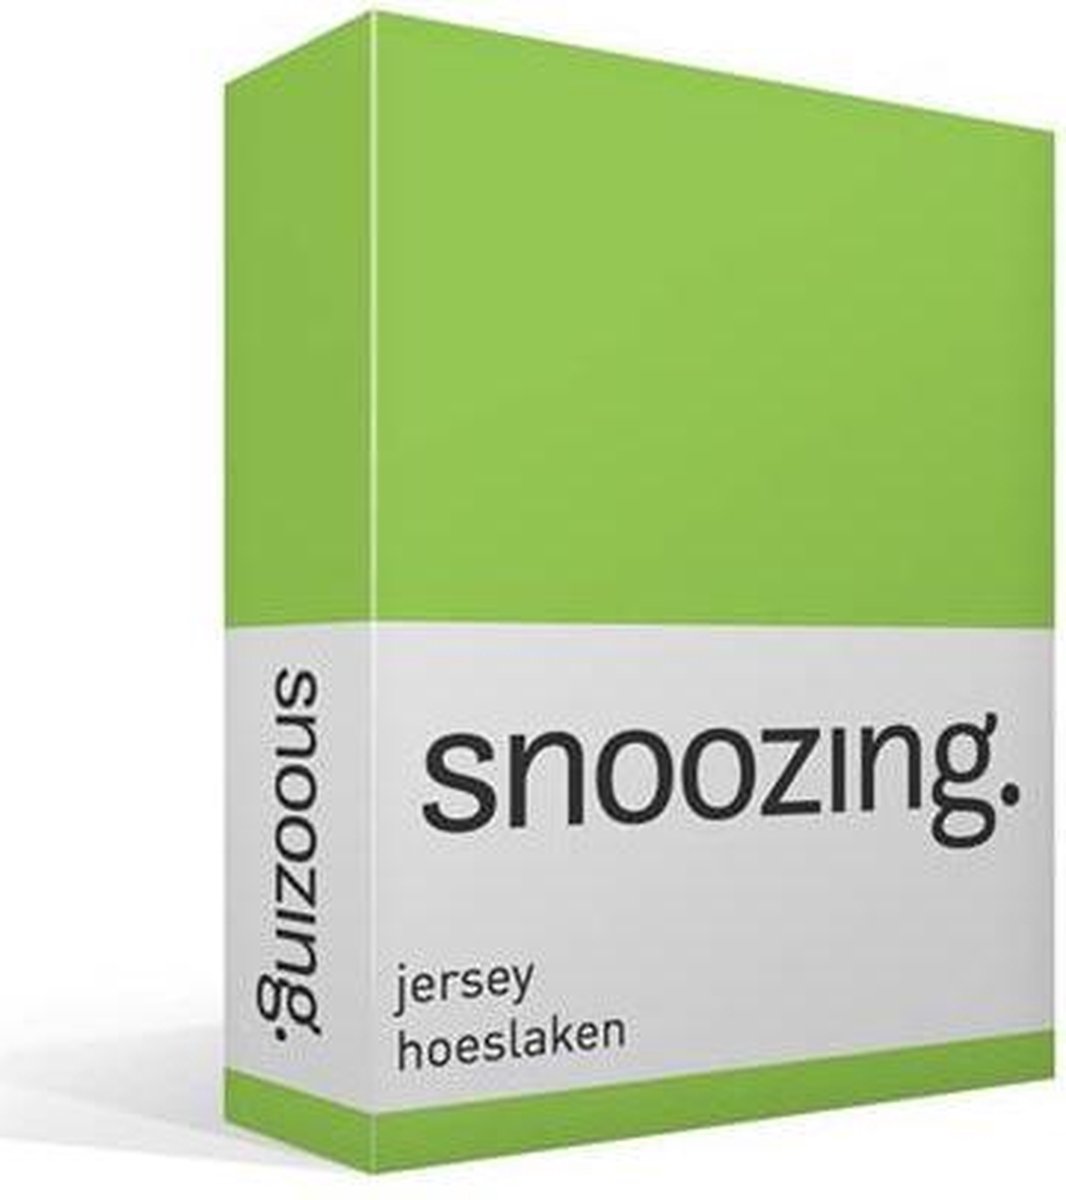 Snoozing Jersey Hoeslaken - 100% Gebreide Jersey Katoen - 1-persoons (70x200 Cm) - Lime - Groen